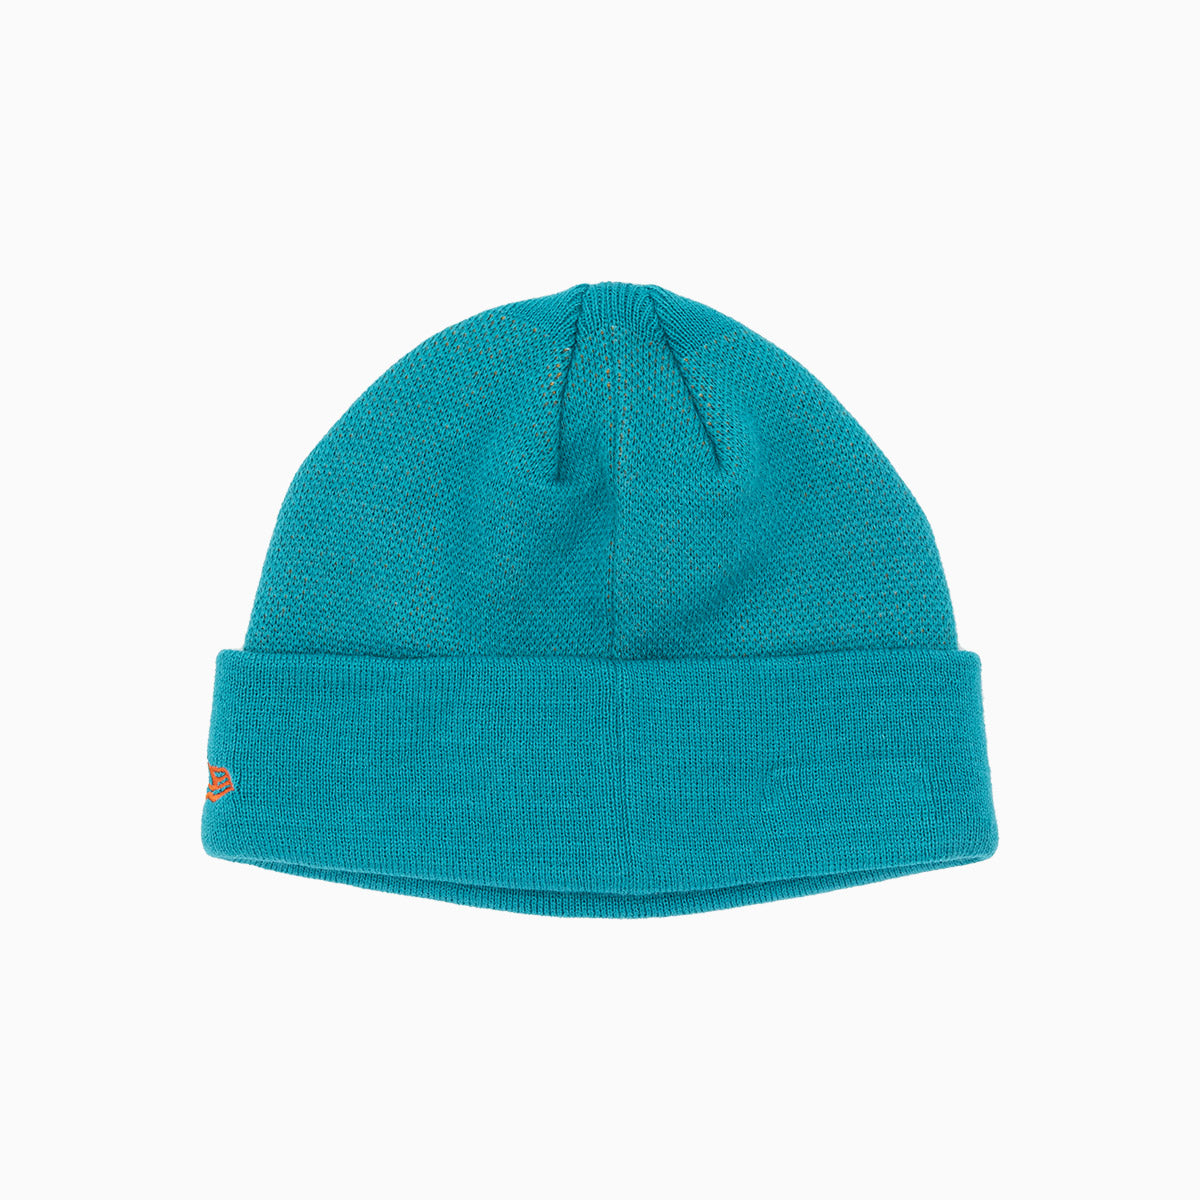 new-era-miami-dolphins-nfl-beanie-knit-hat-10593272